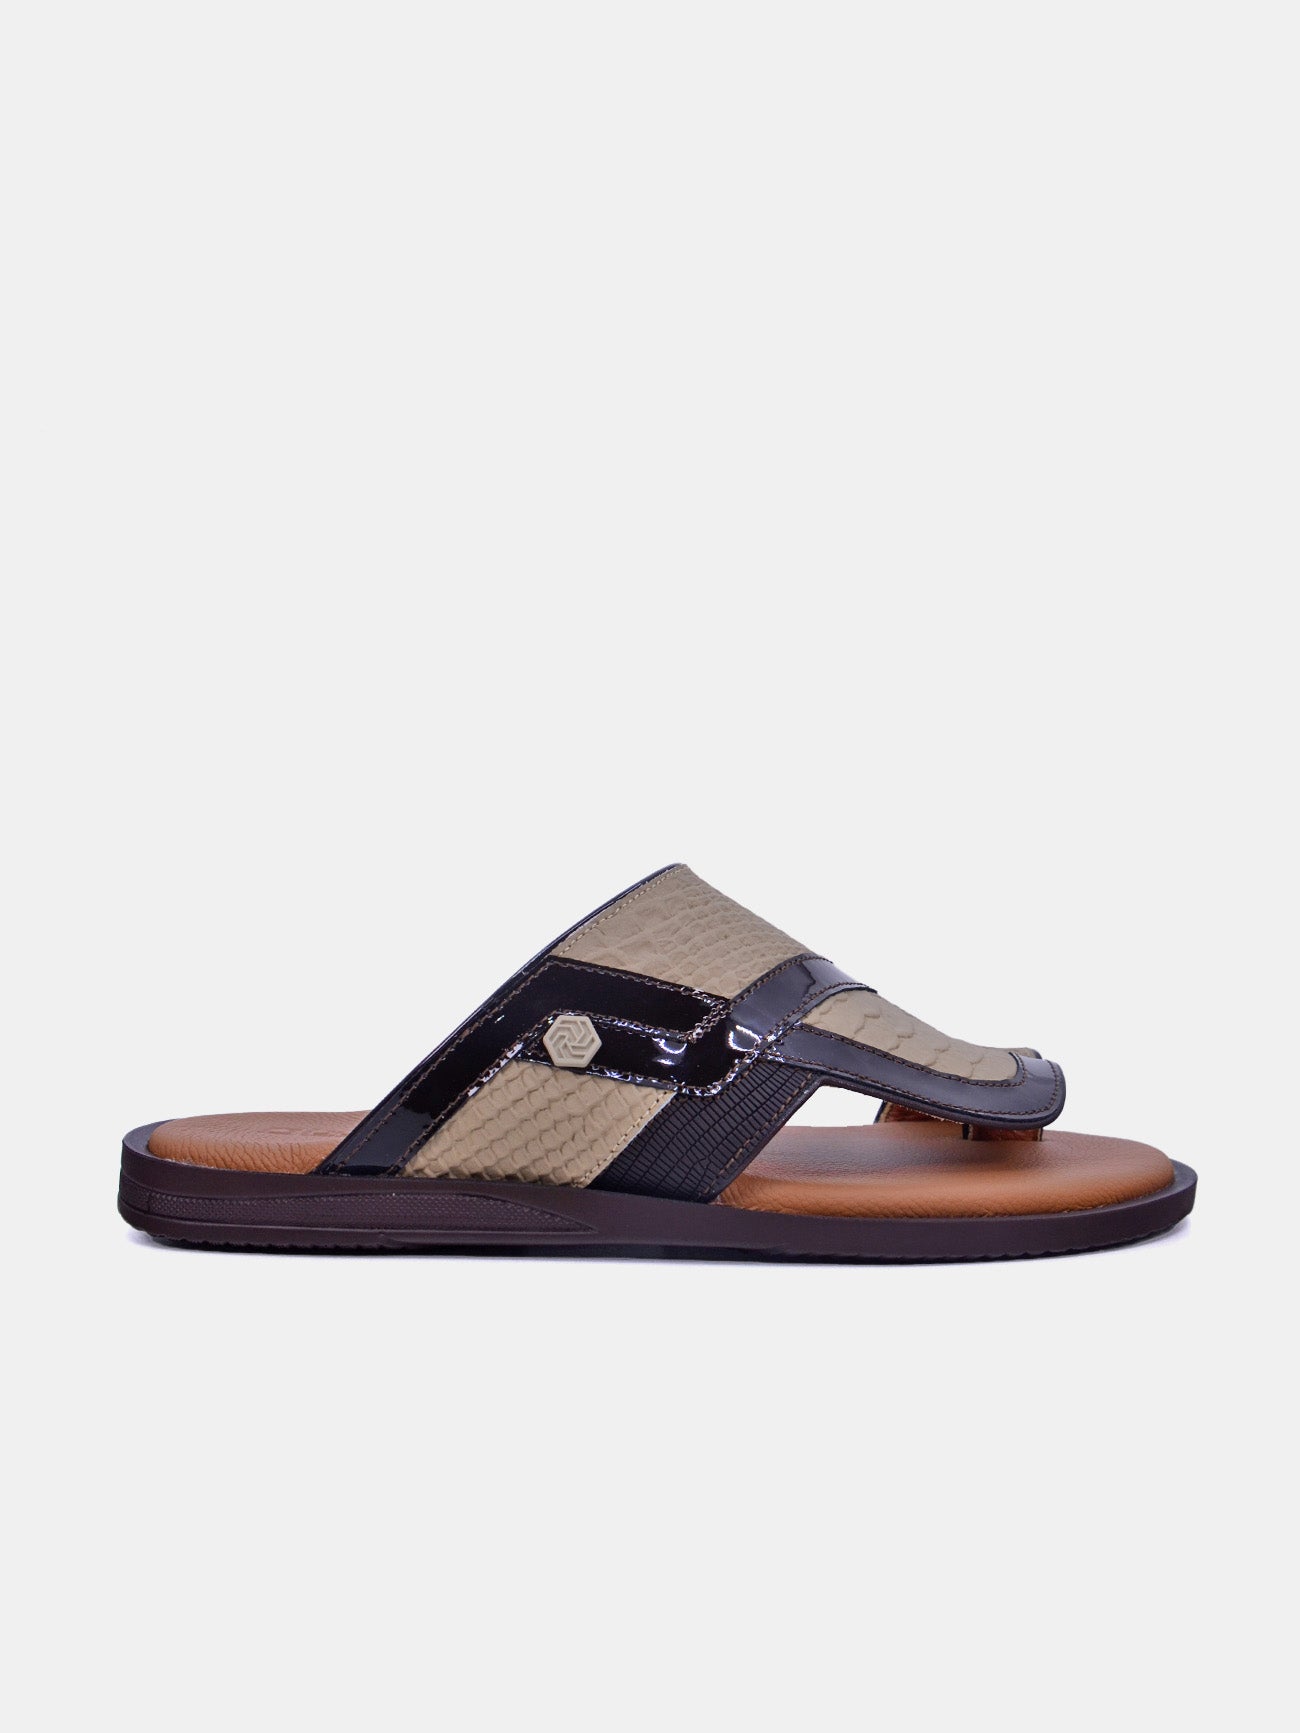 Barjeel Uno 175-043 Men's Sandals